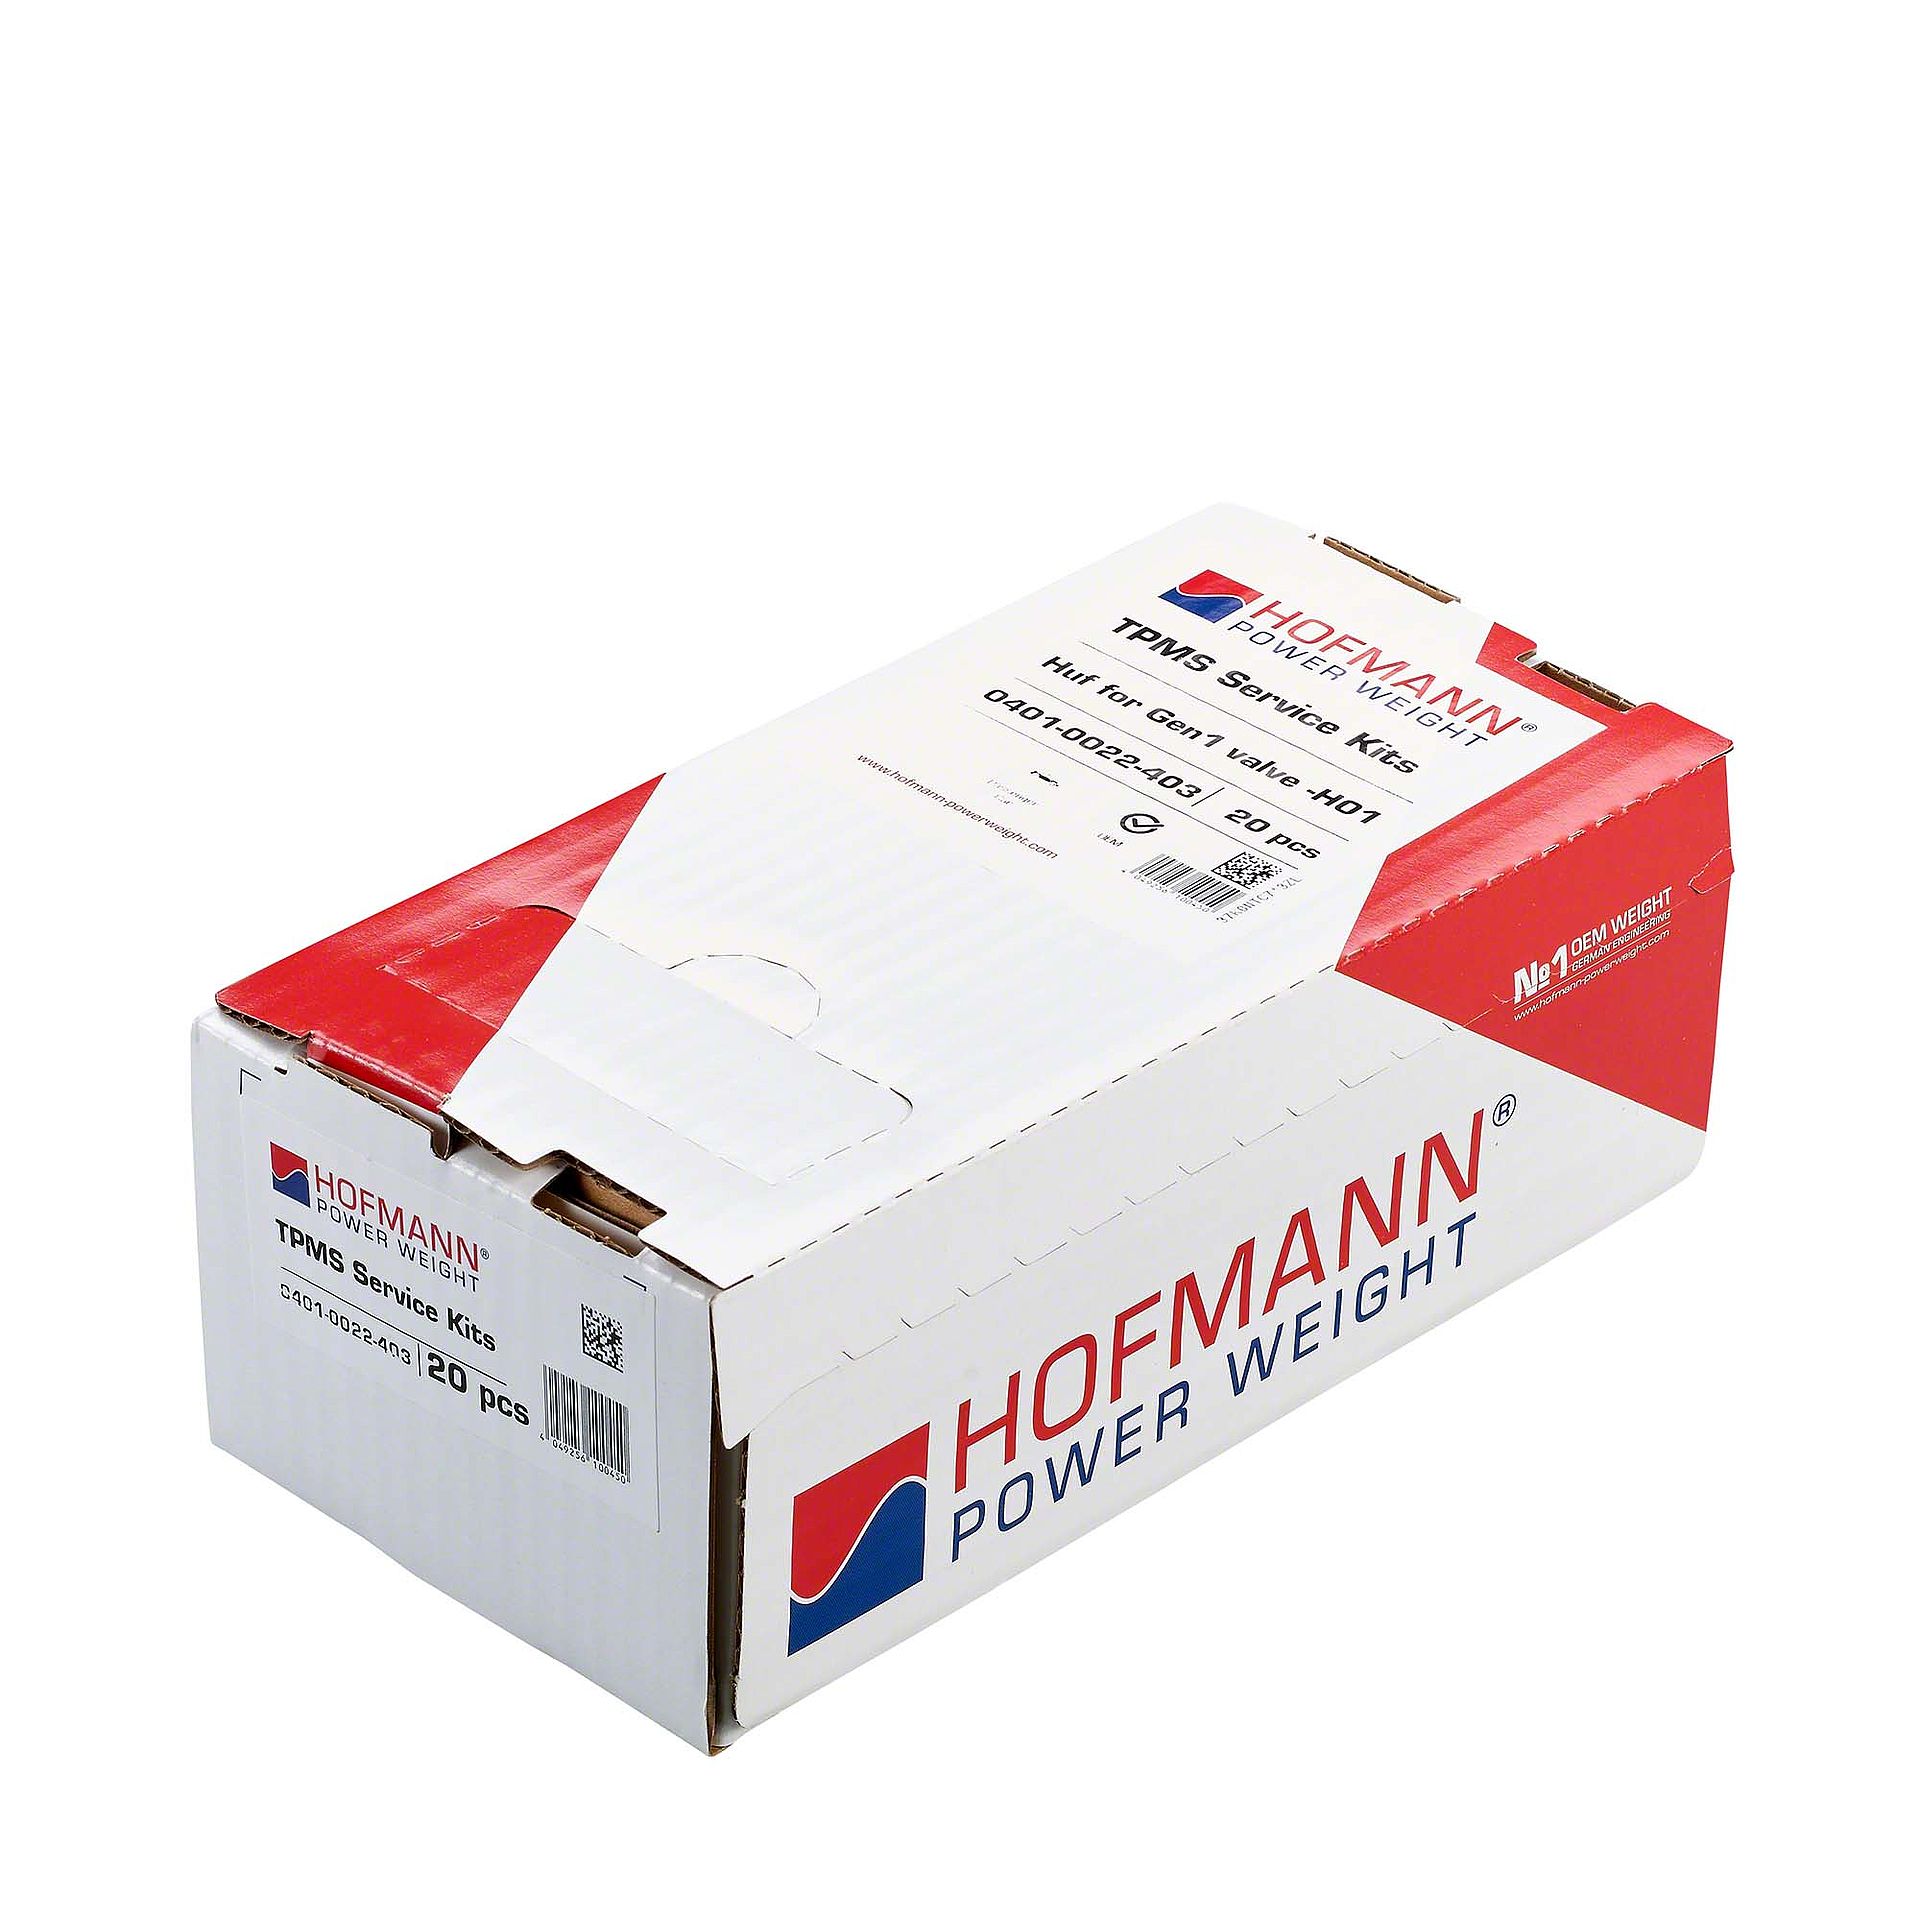 1x Kit réparation TPMS H01 pour Huf Gen1 Hofmann Power Weight Kit de réparation TPMS valve capteur pression pneu TPMS 